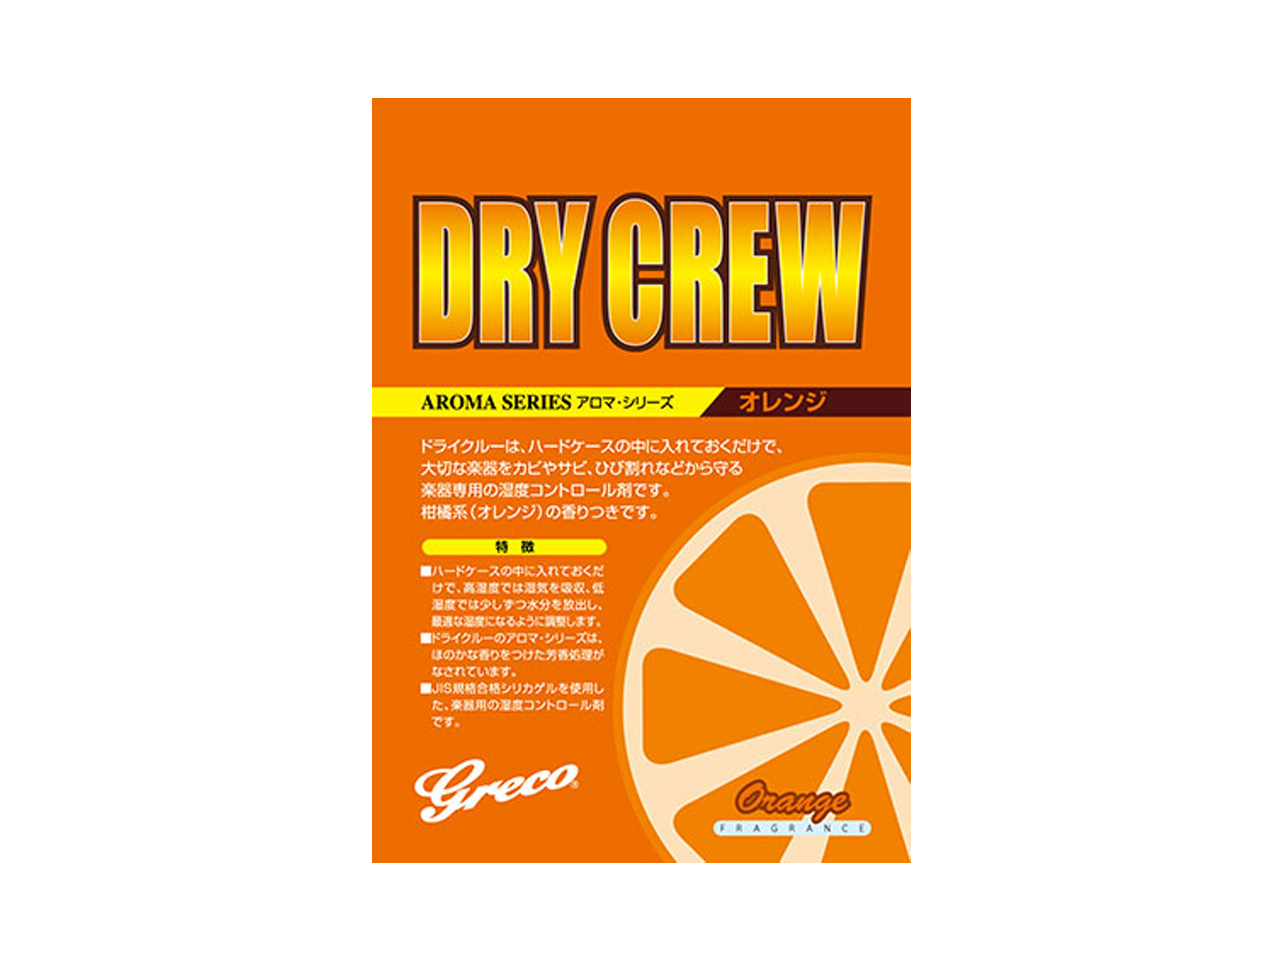 Greco(グレコ) Dry Crew / オレンジ (湿度調整剤)